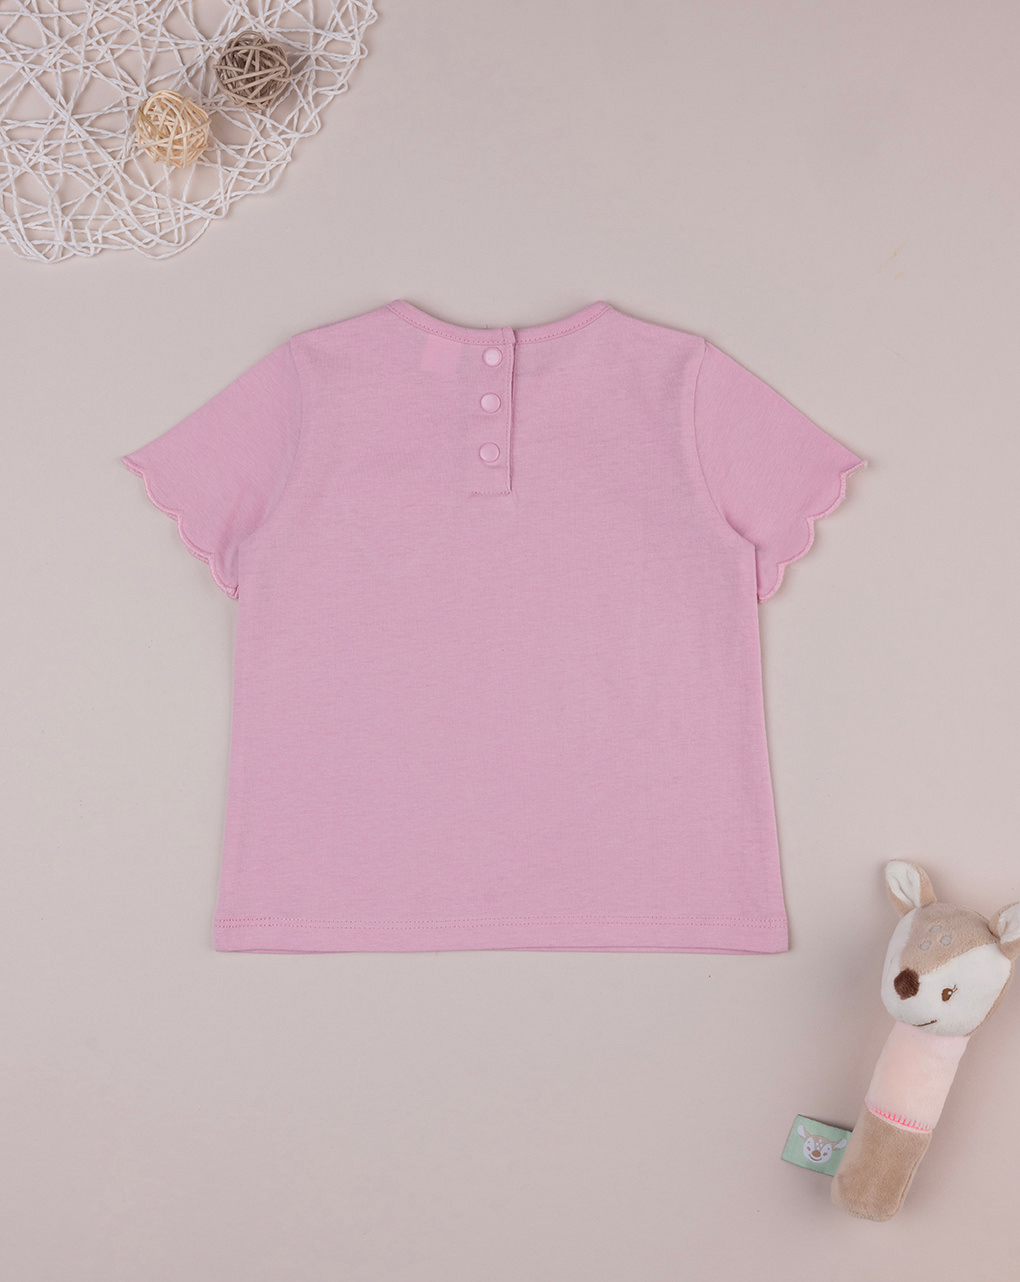 βρεφικό t-shirt ροζ με patch καρδούλα για κορίτσι - Prénatal